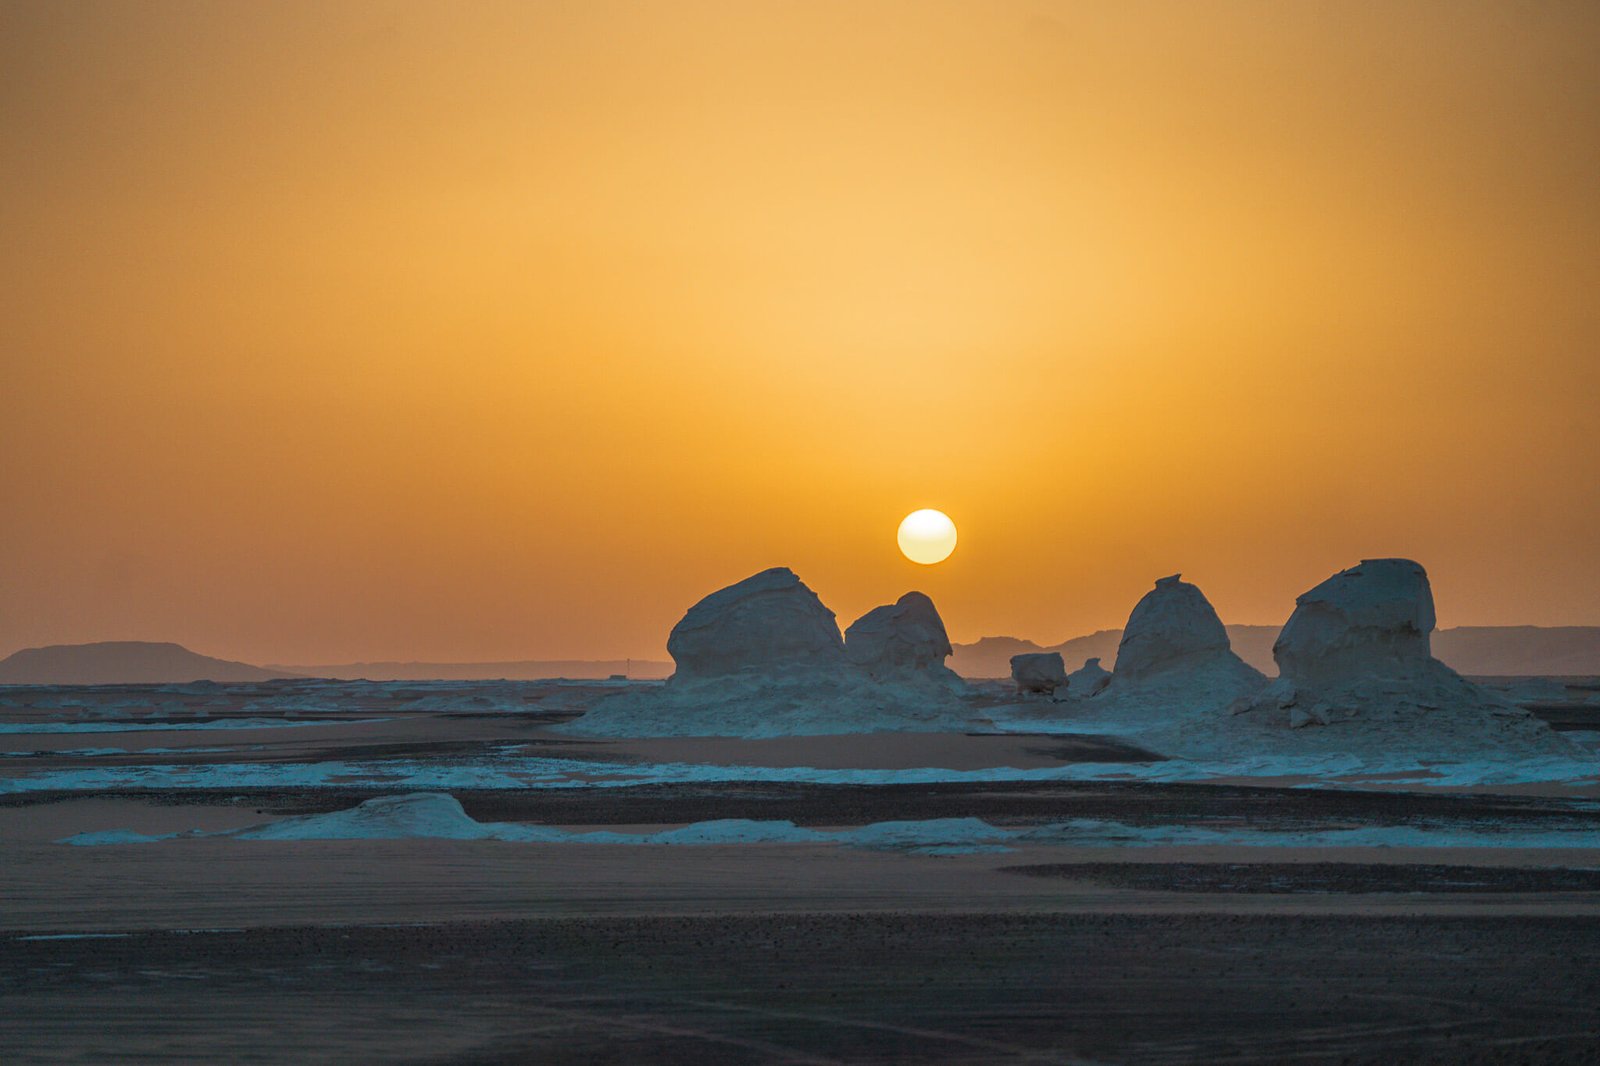 sunset at the white desert in Egypt